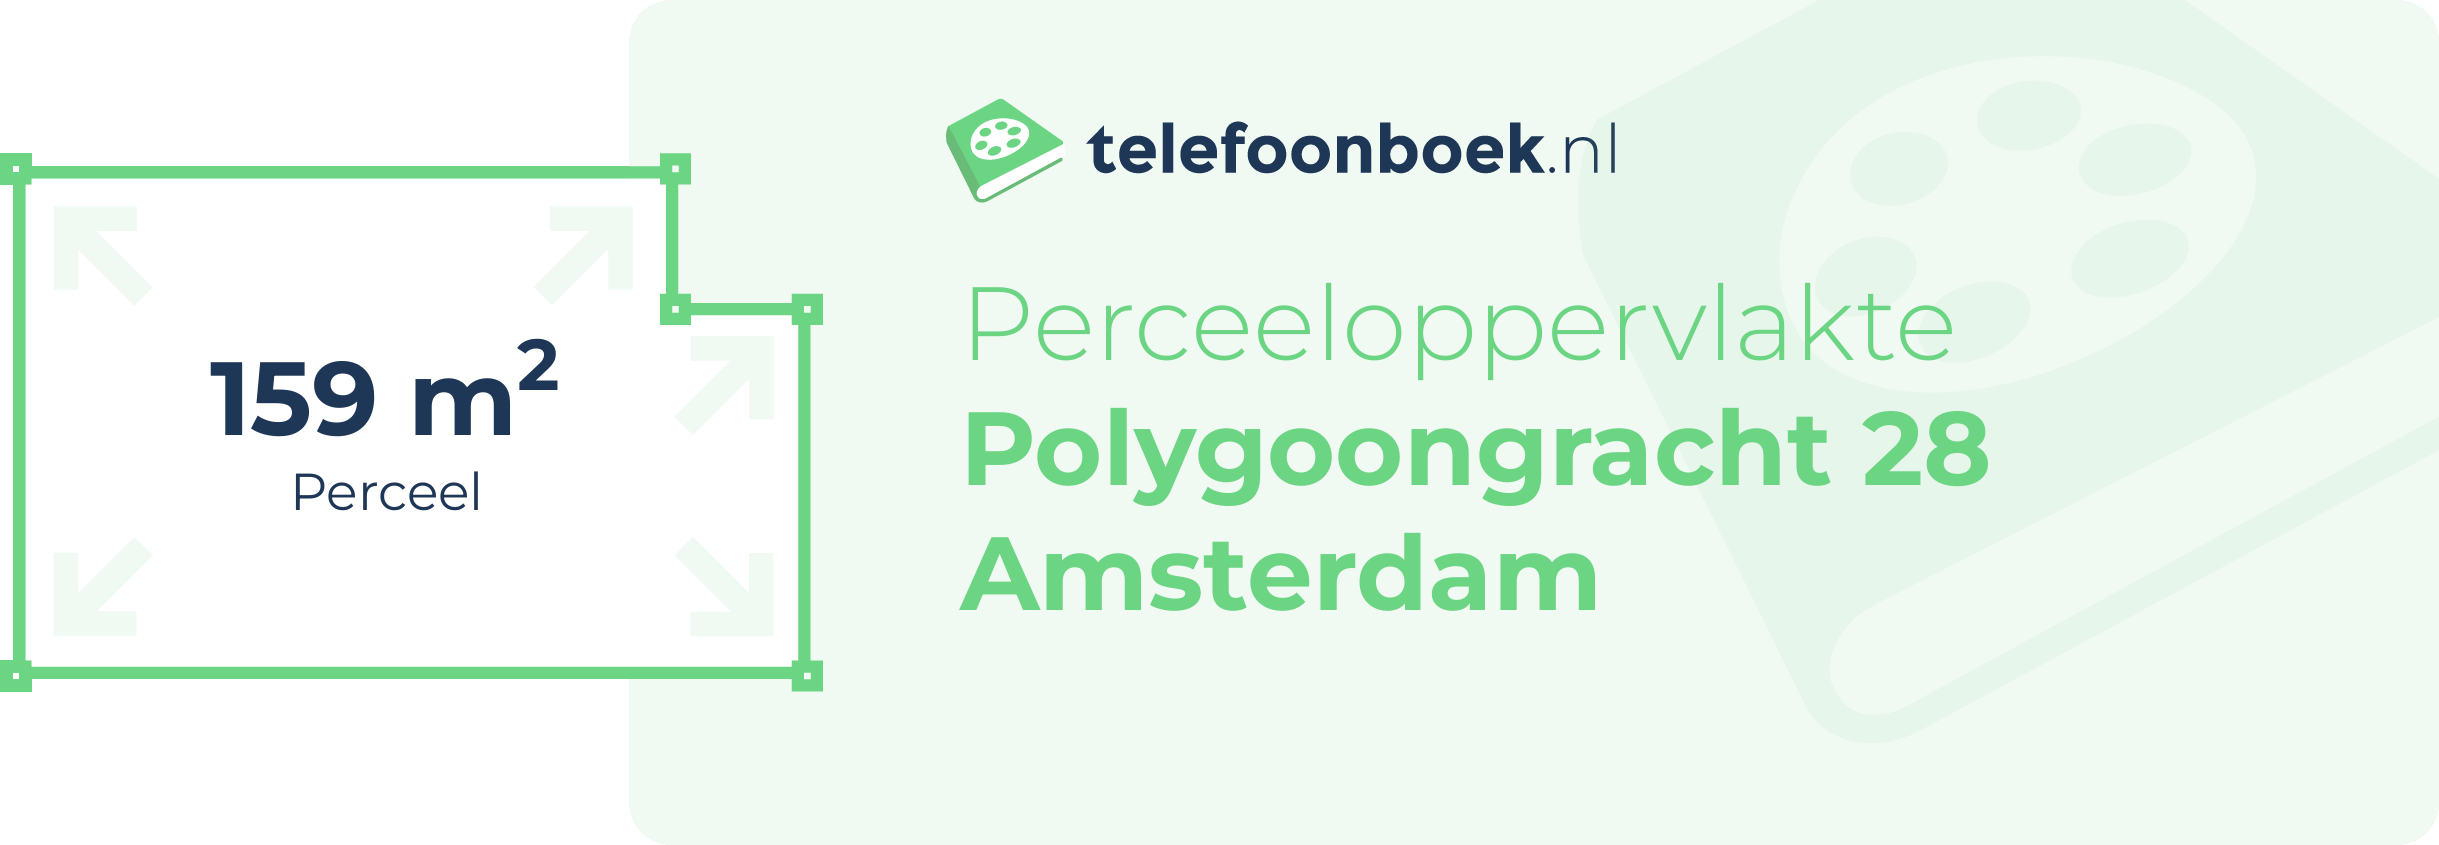 Perceeloppervlakte Polygoongracht 28 Amsterdam